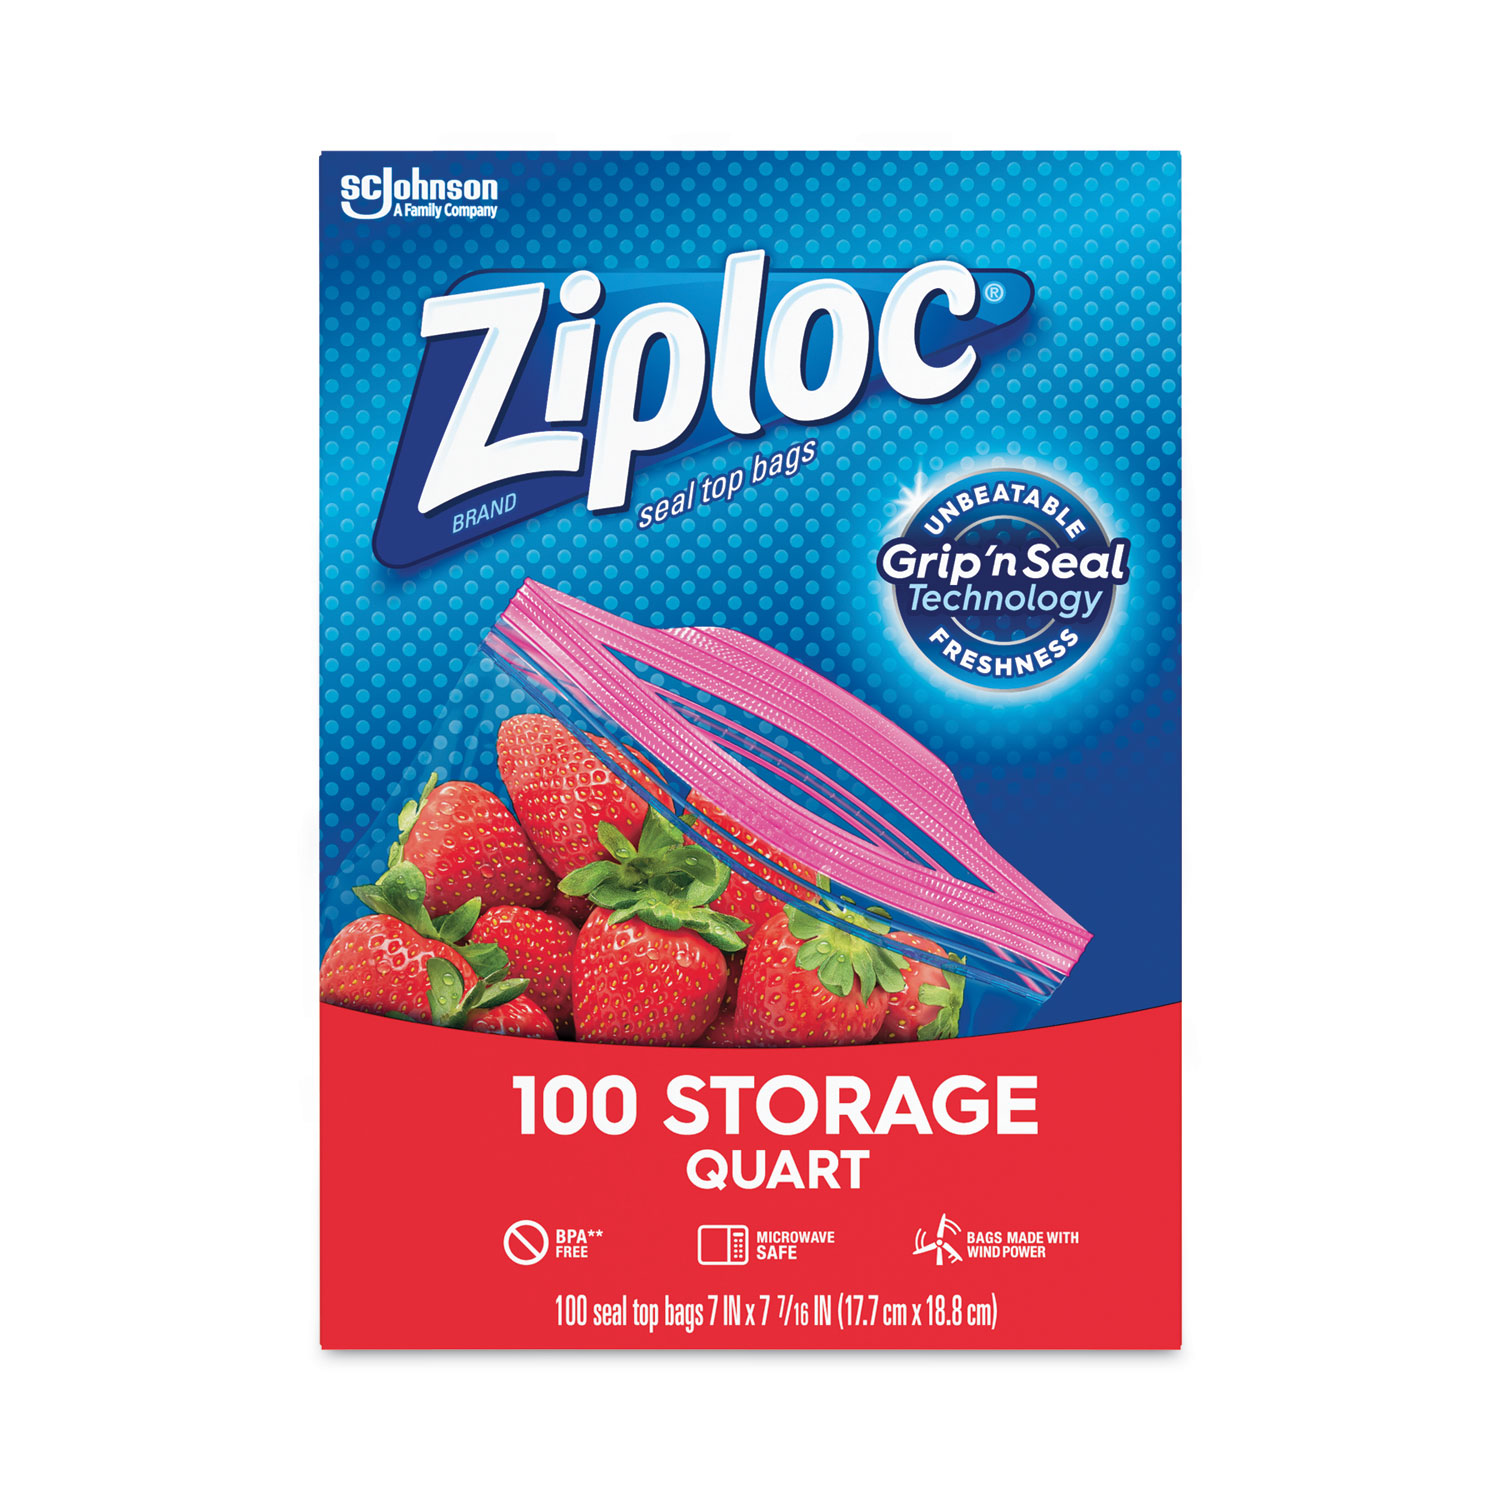 Ziploc Half Gallon Marinade Food Storage Bags for Meal Prep, Grip 'n Seal